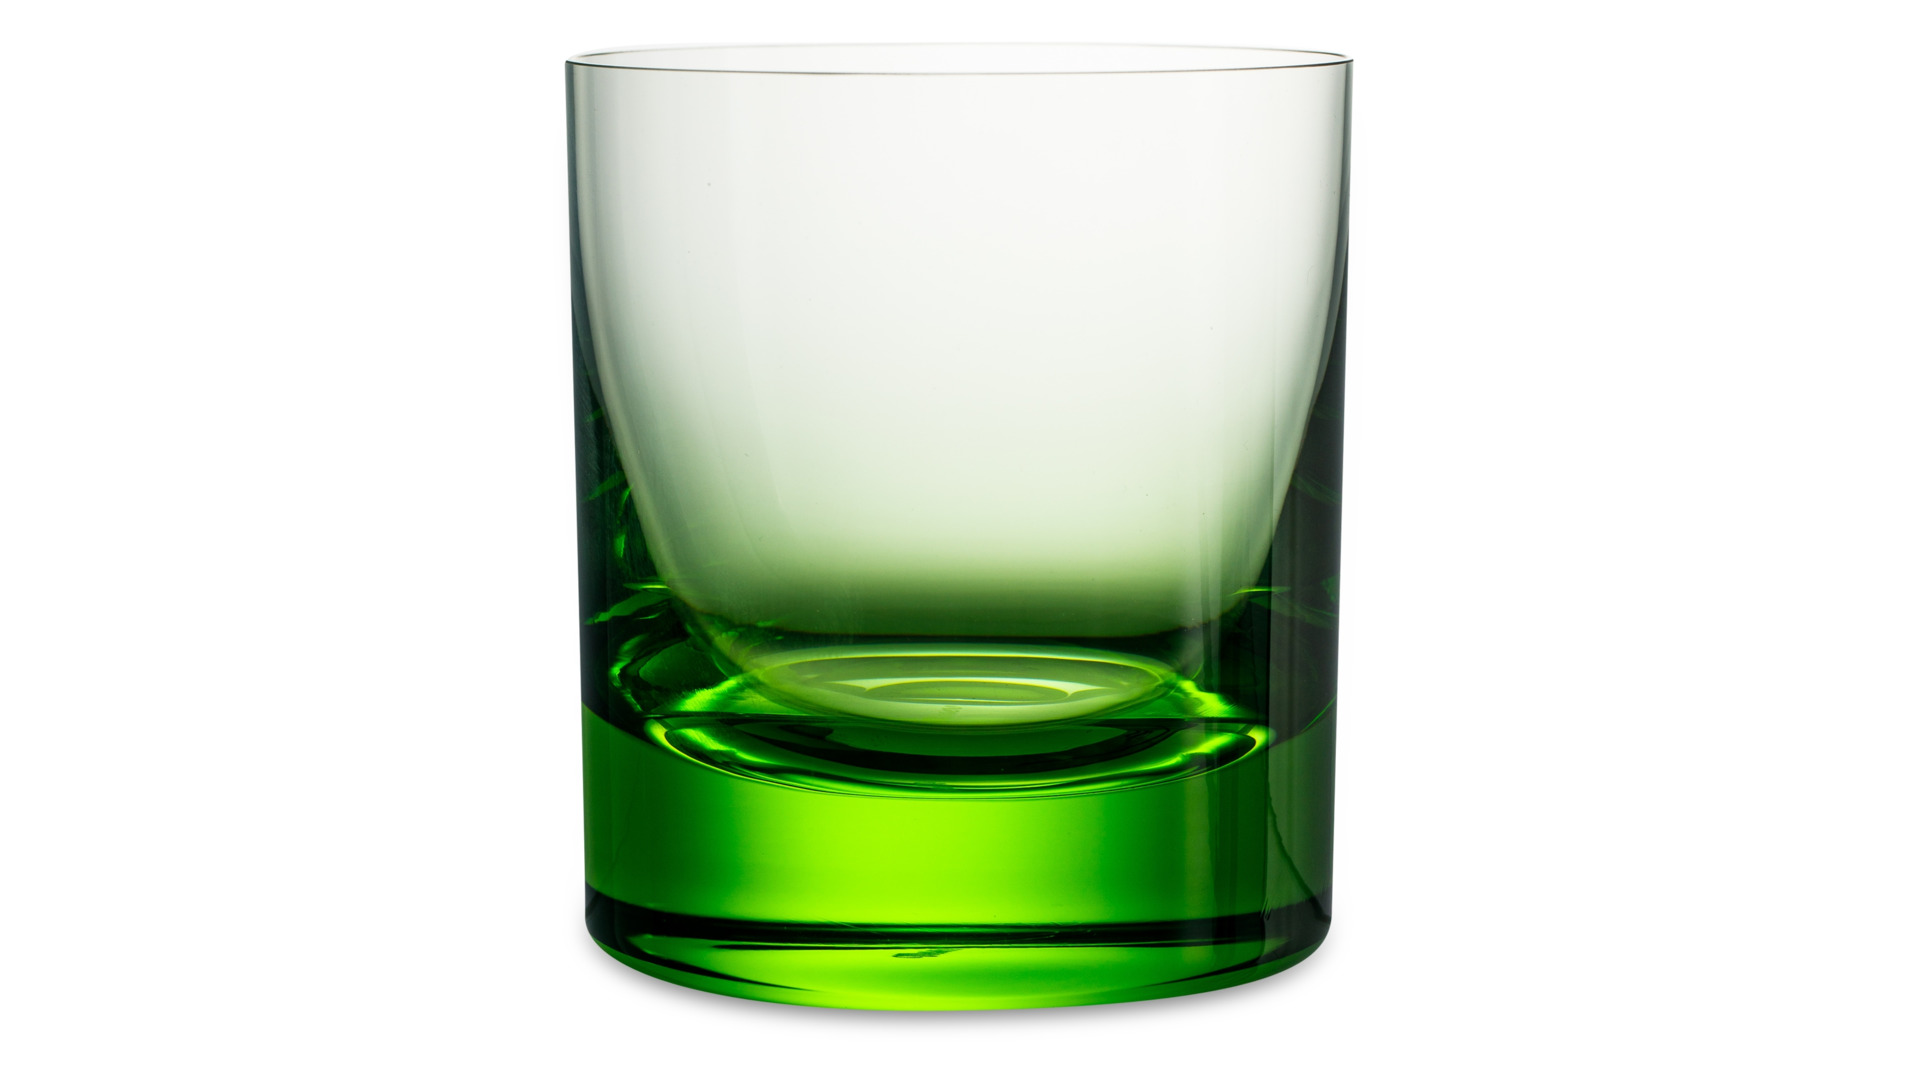 Набор стаканов для виски Moser Виски сет 370 мл, 2 шт, зеленый, п/к